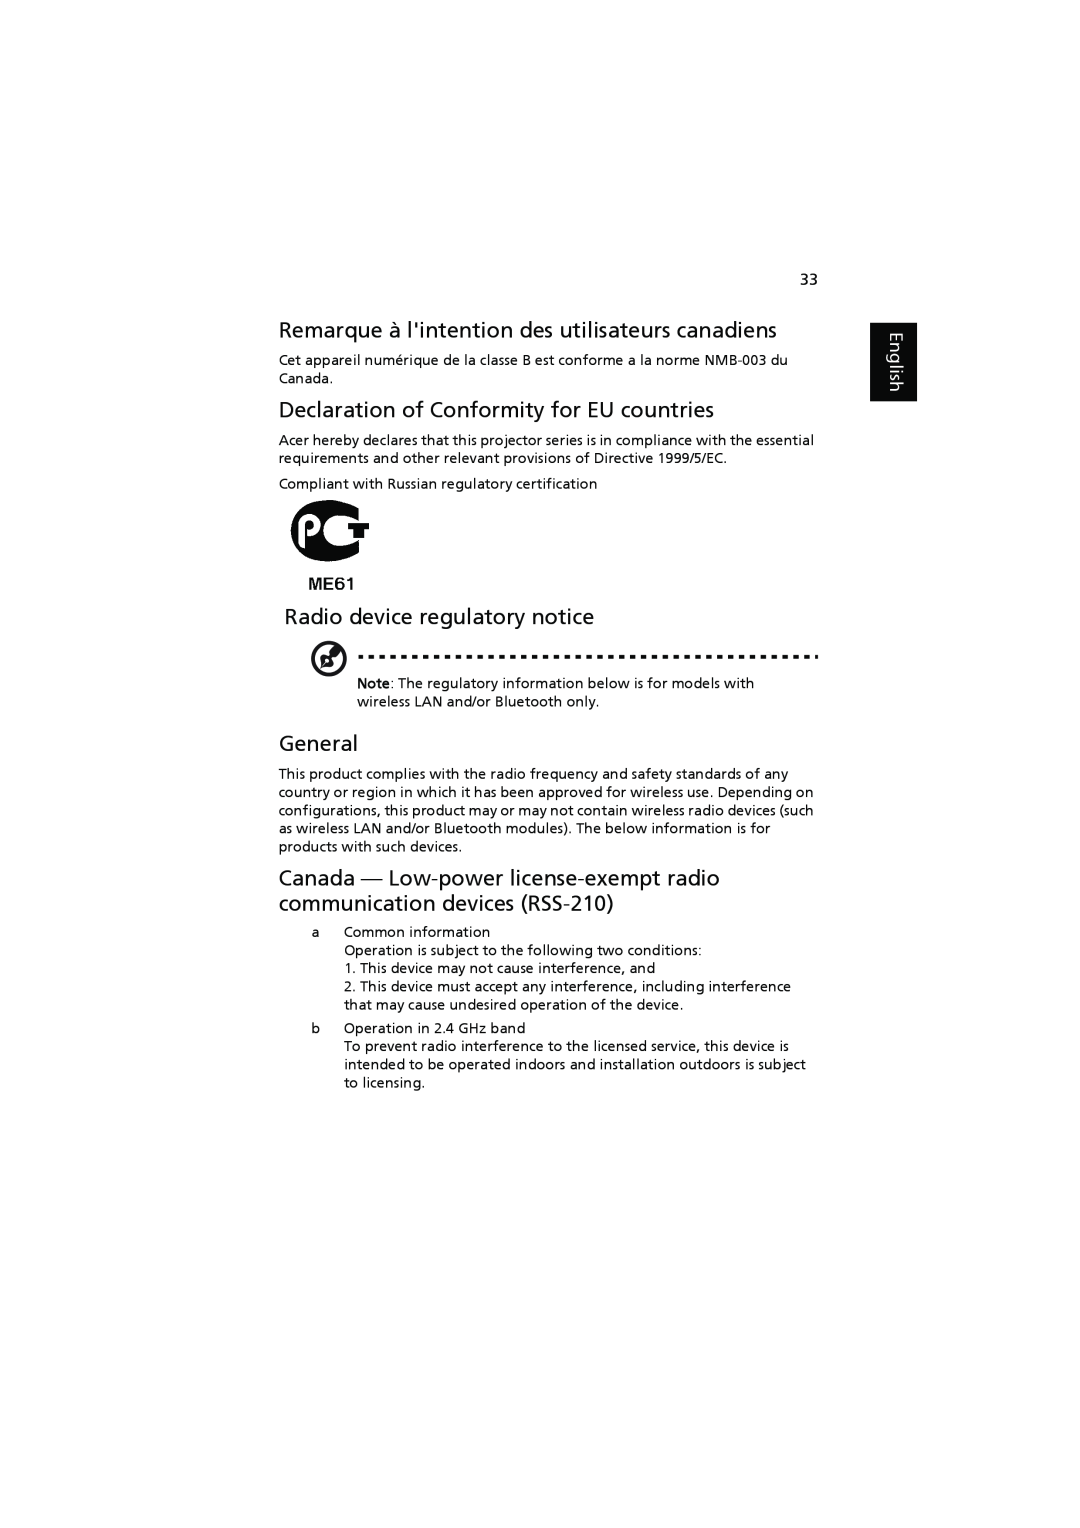 Acer K11 Remarque à lintention des utilisateurs canadiens, Declaration of Conformity for EU countries, General, English 